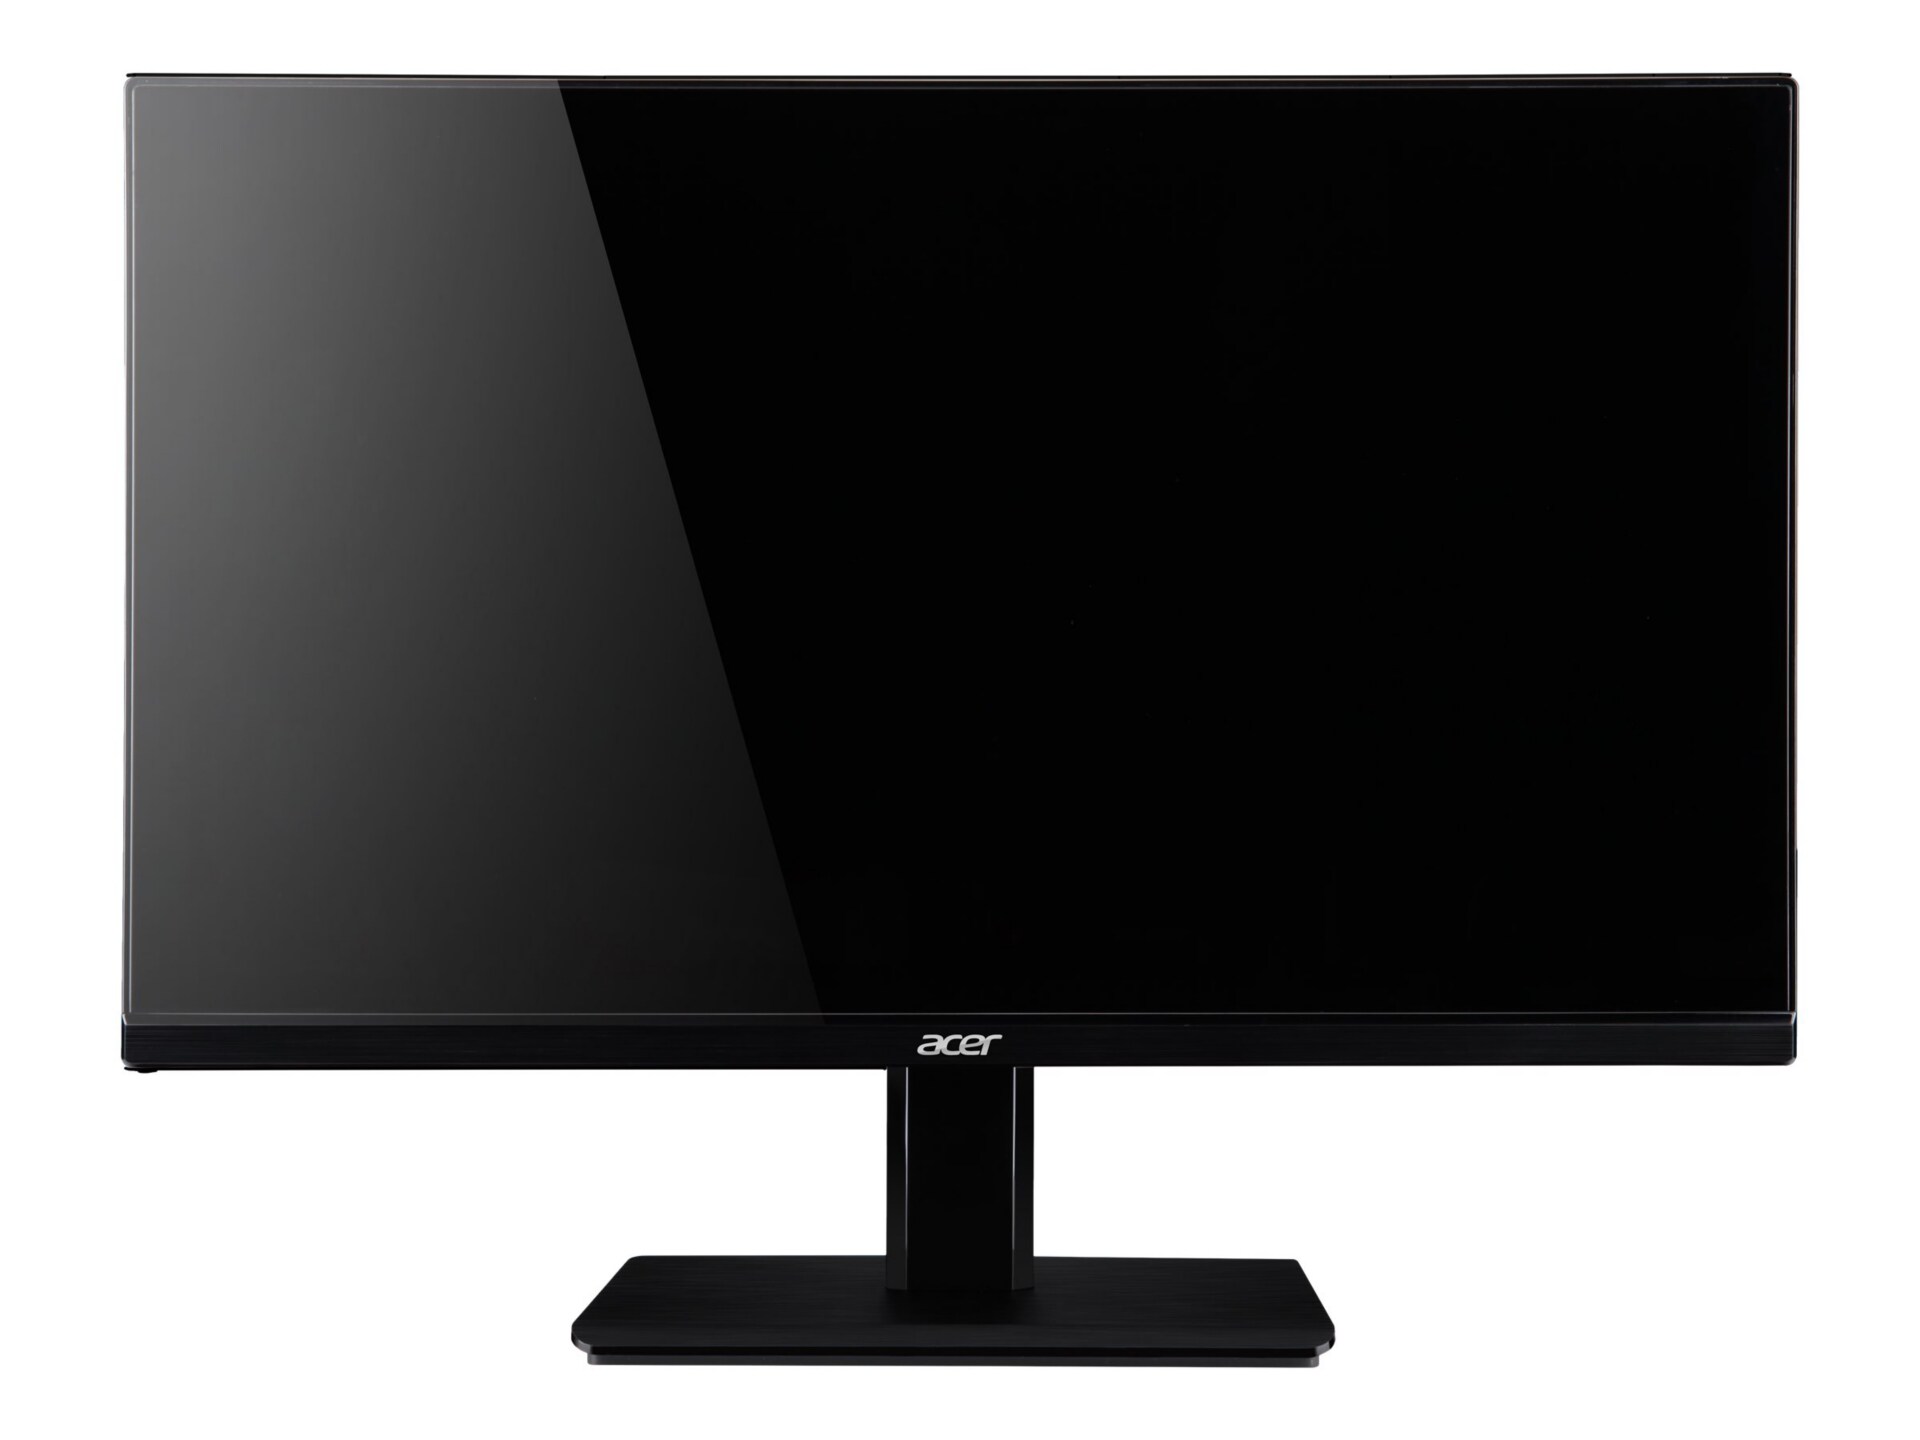 Acer H236HL bid 23" LED-backlit LCD - Black